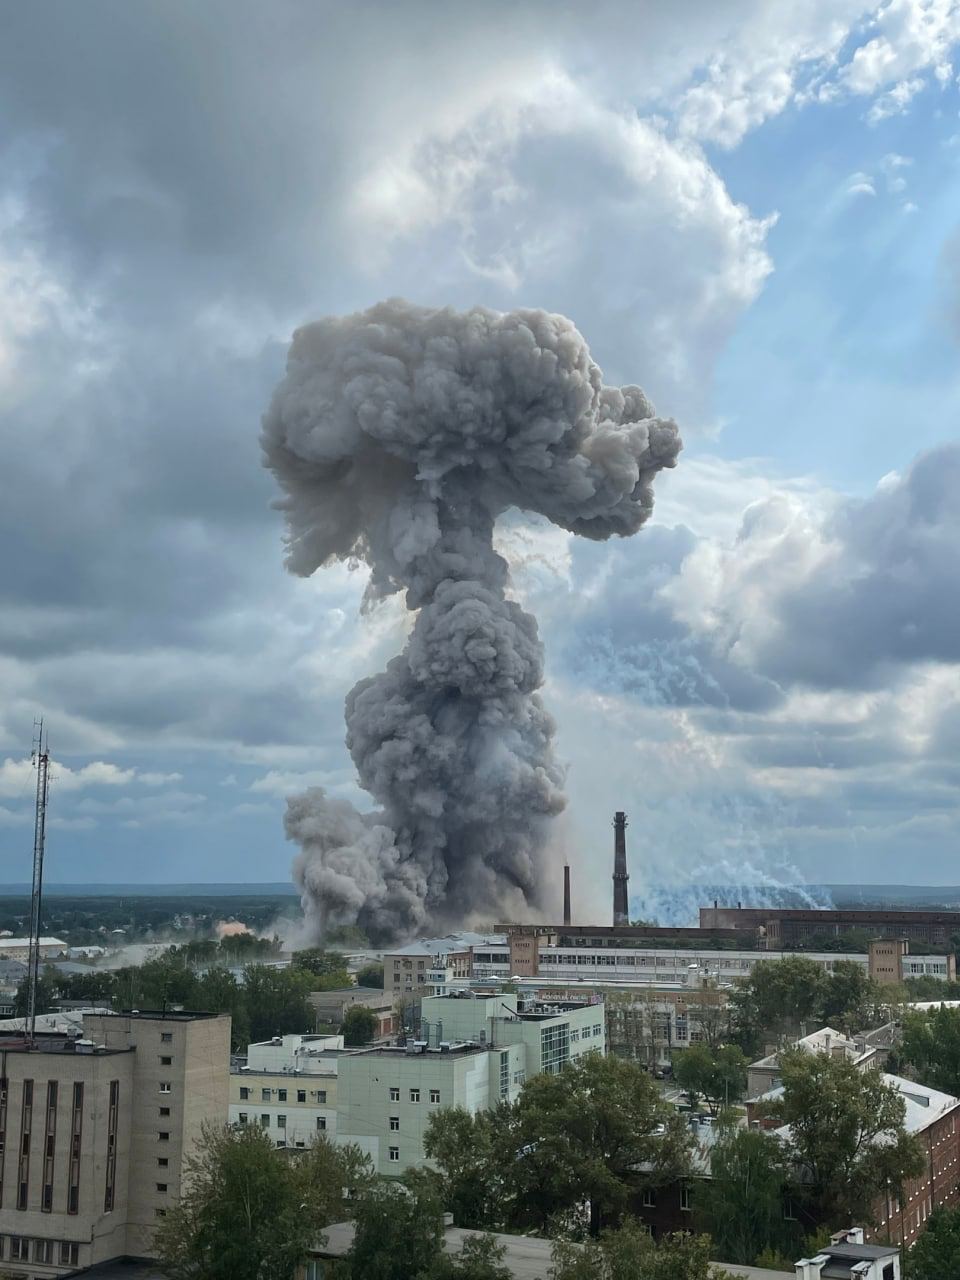 "Разнесло все": что известно о заводе в Подмосковье, где прогремел взрыв, и что там производили